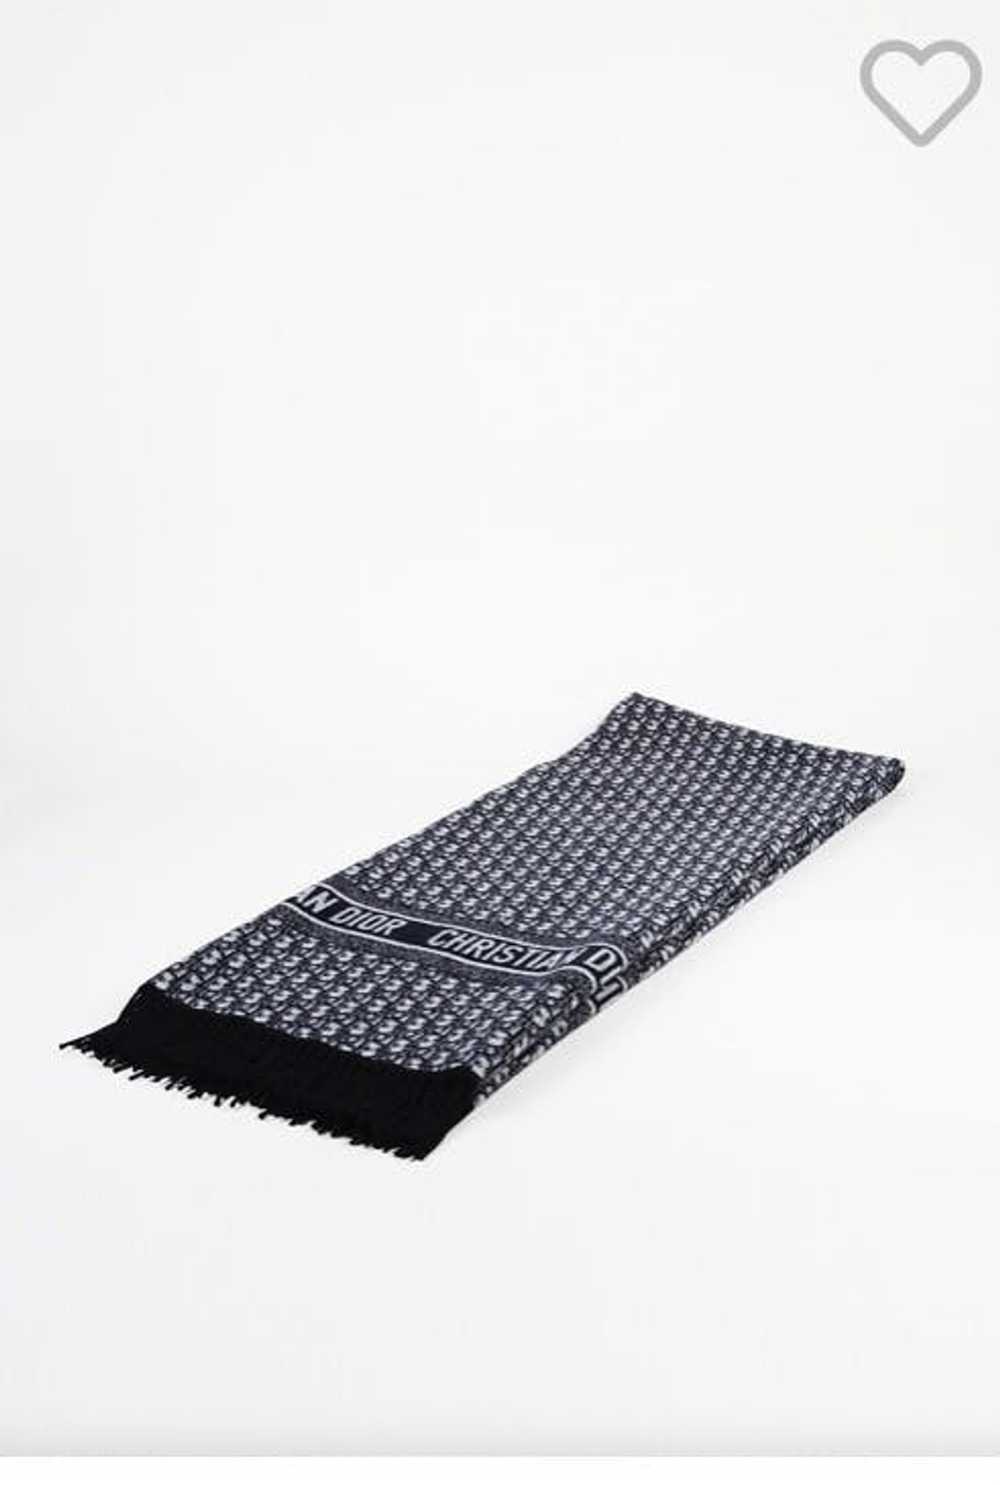 Dior Christian Dior Oblique Cashmere Throw Blanket - image 6